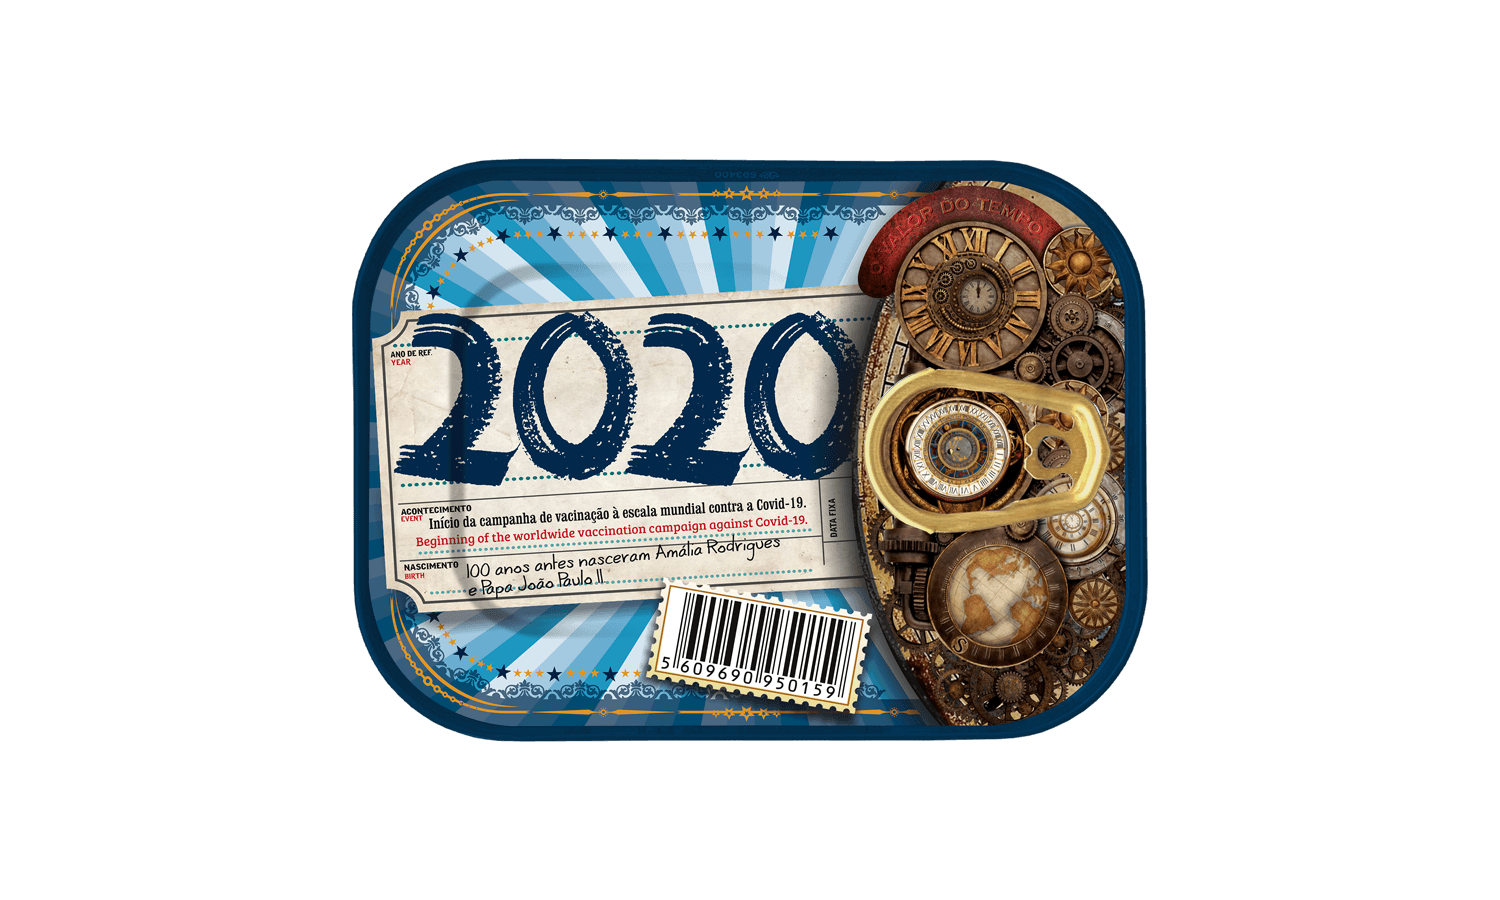 Sardinas del tiempo | 2020